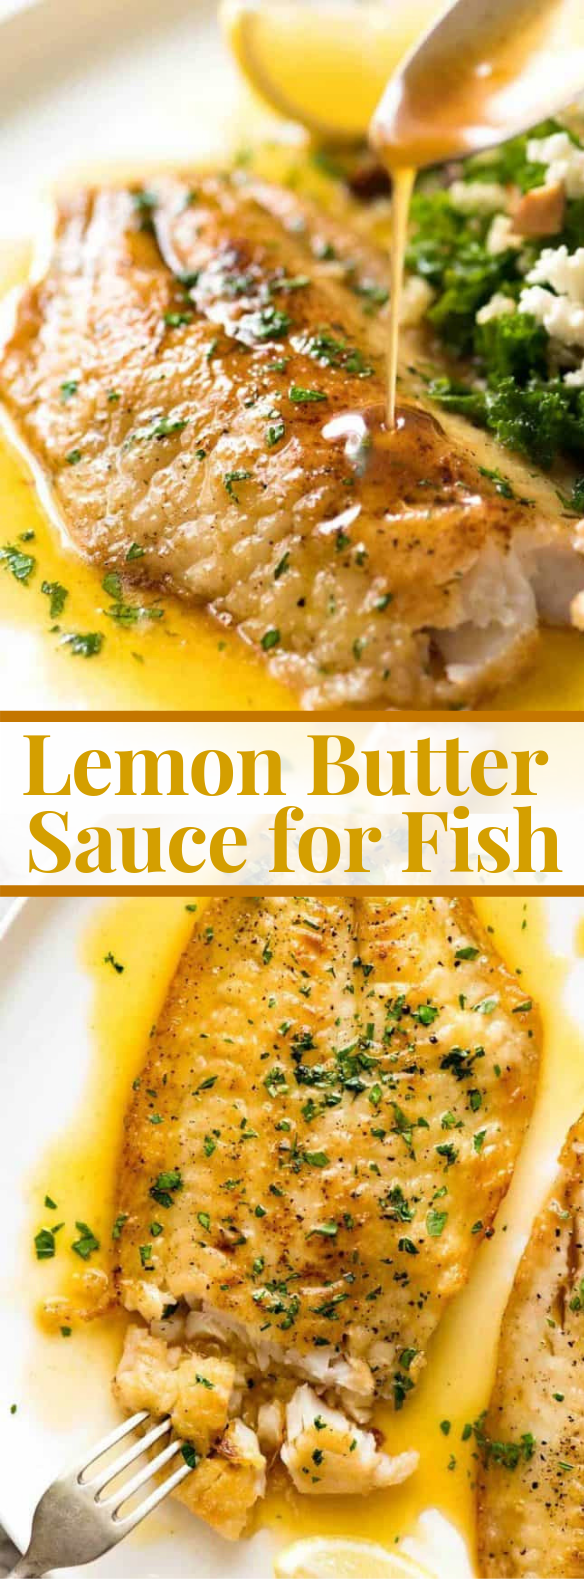 Killer Lemon Butter Sauce for Fish #dinner #meal